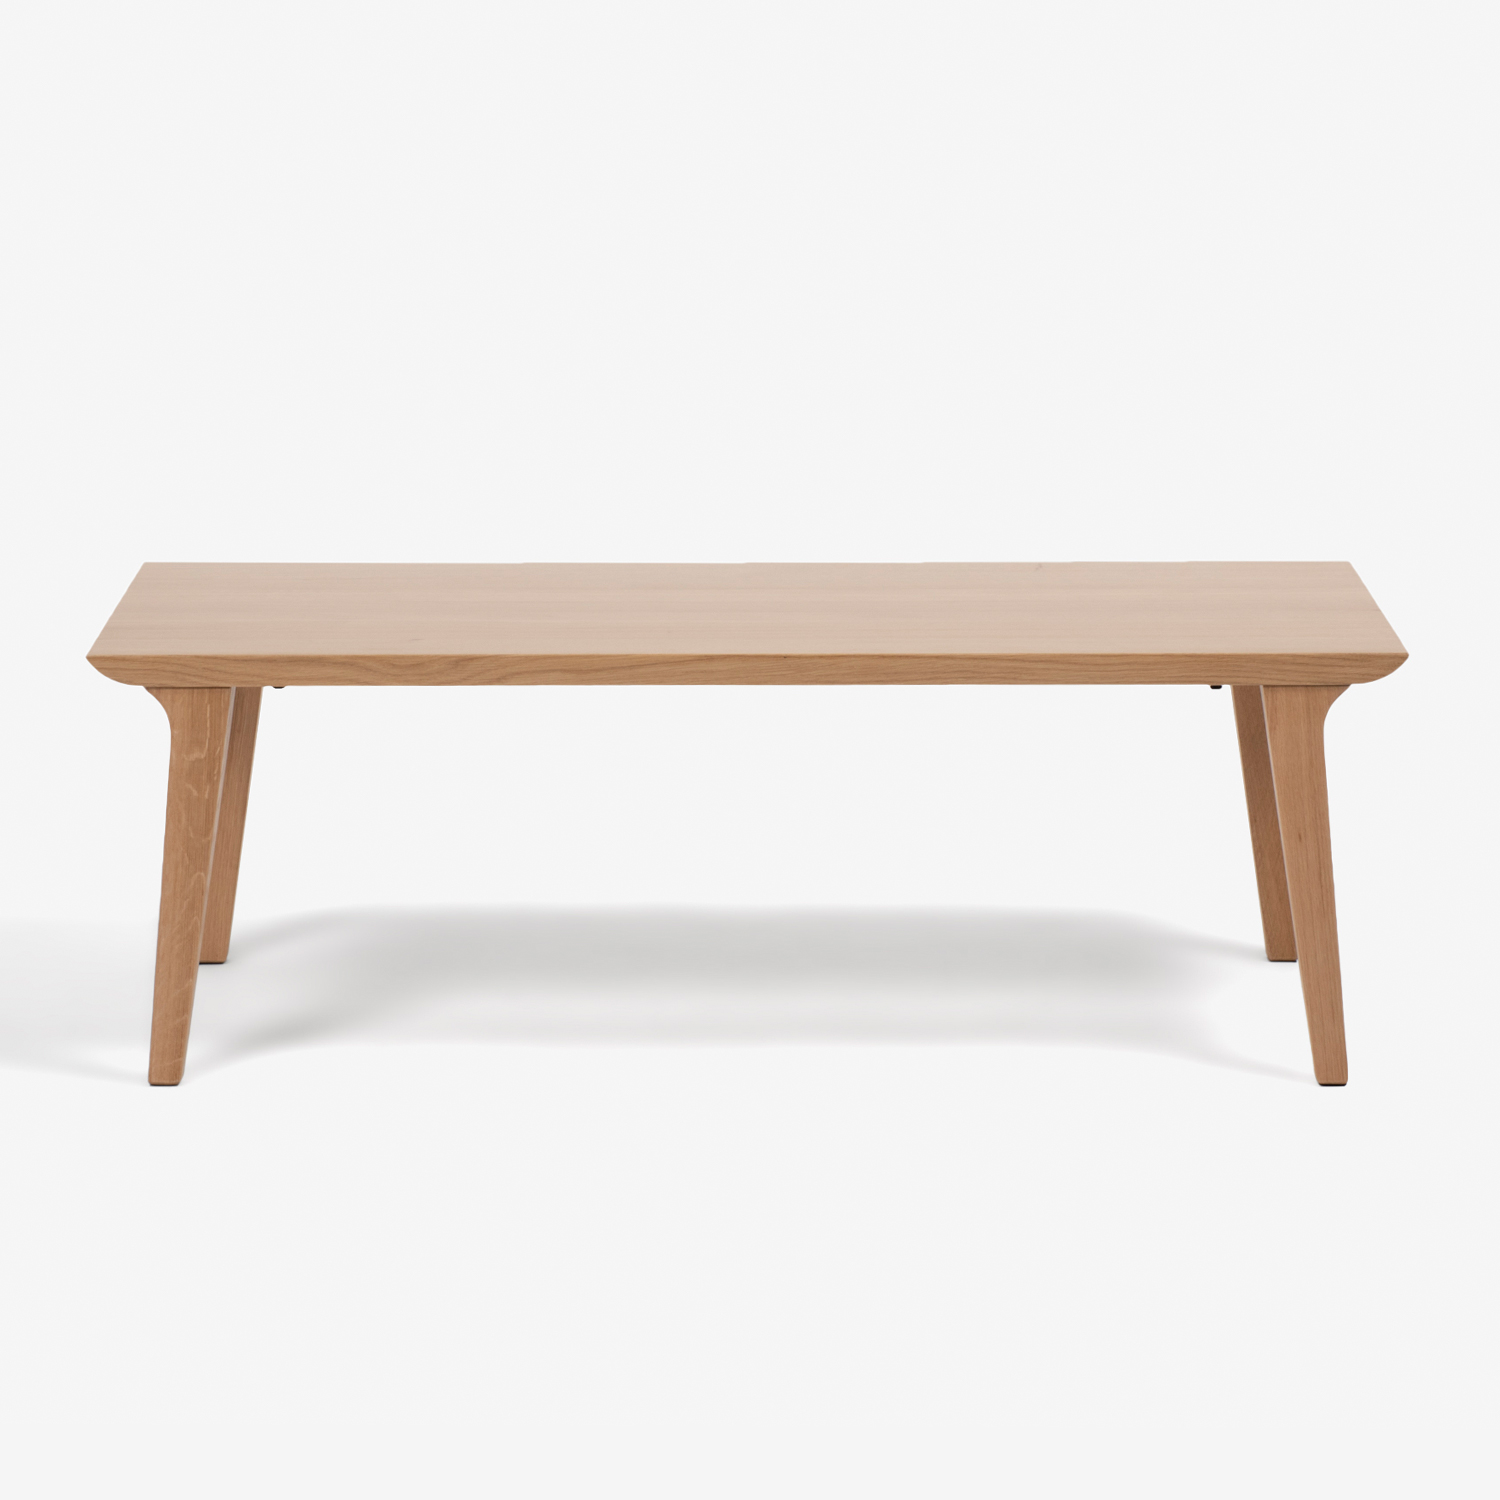 センターテーブル「ハイヒール」幅120cm オーク材 ホワイトオーク色